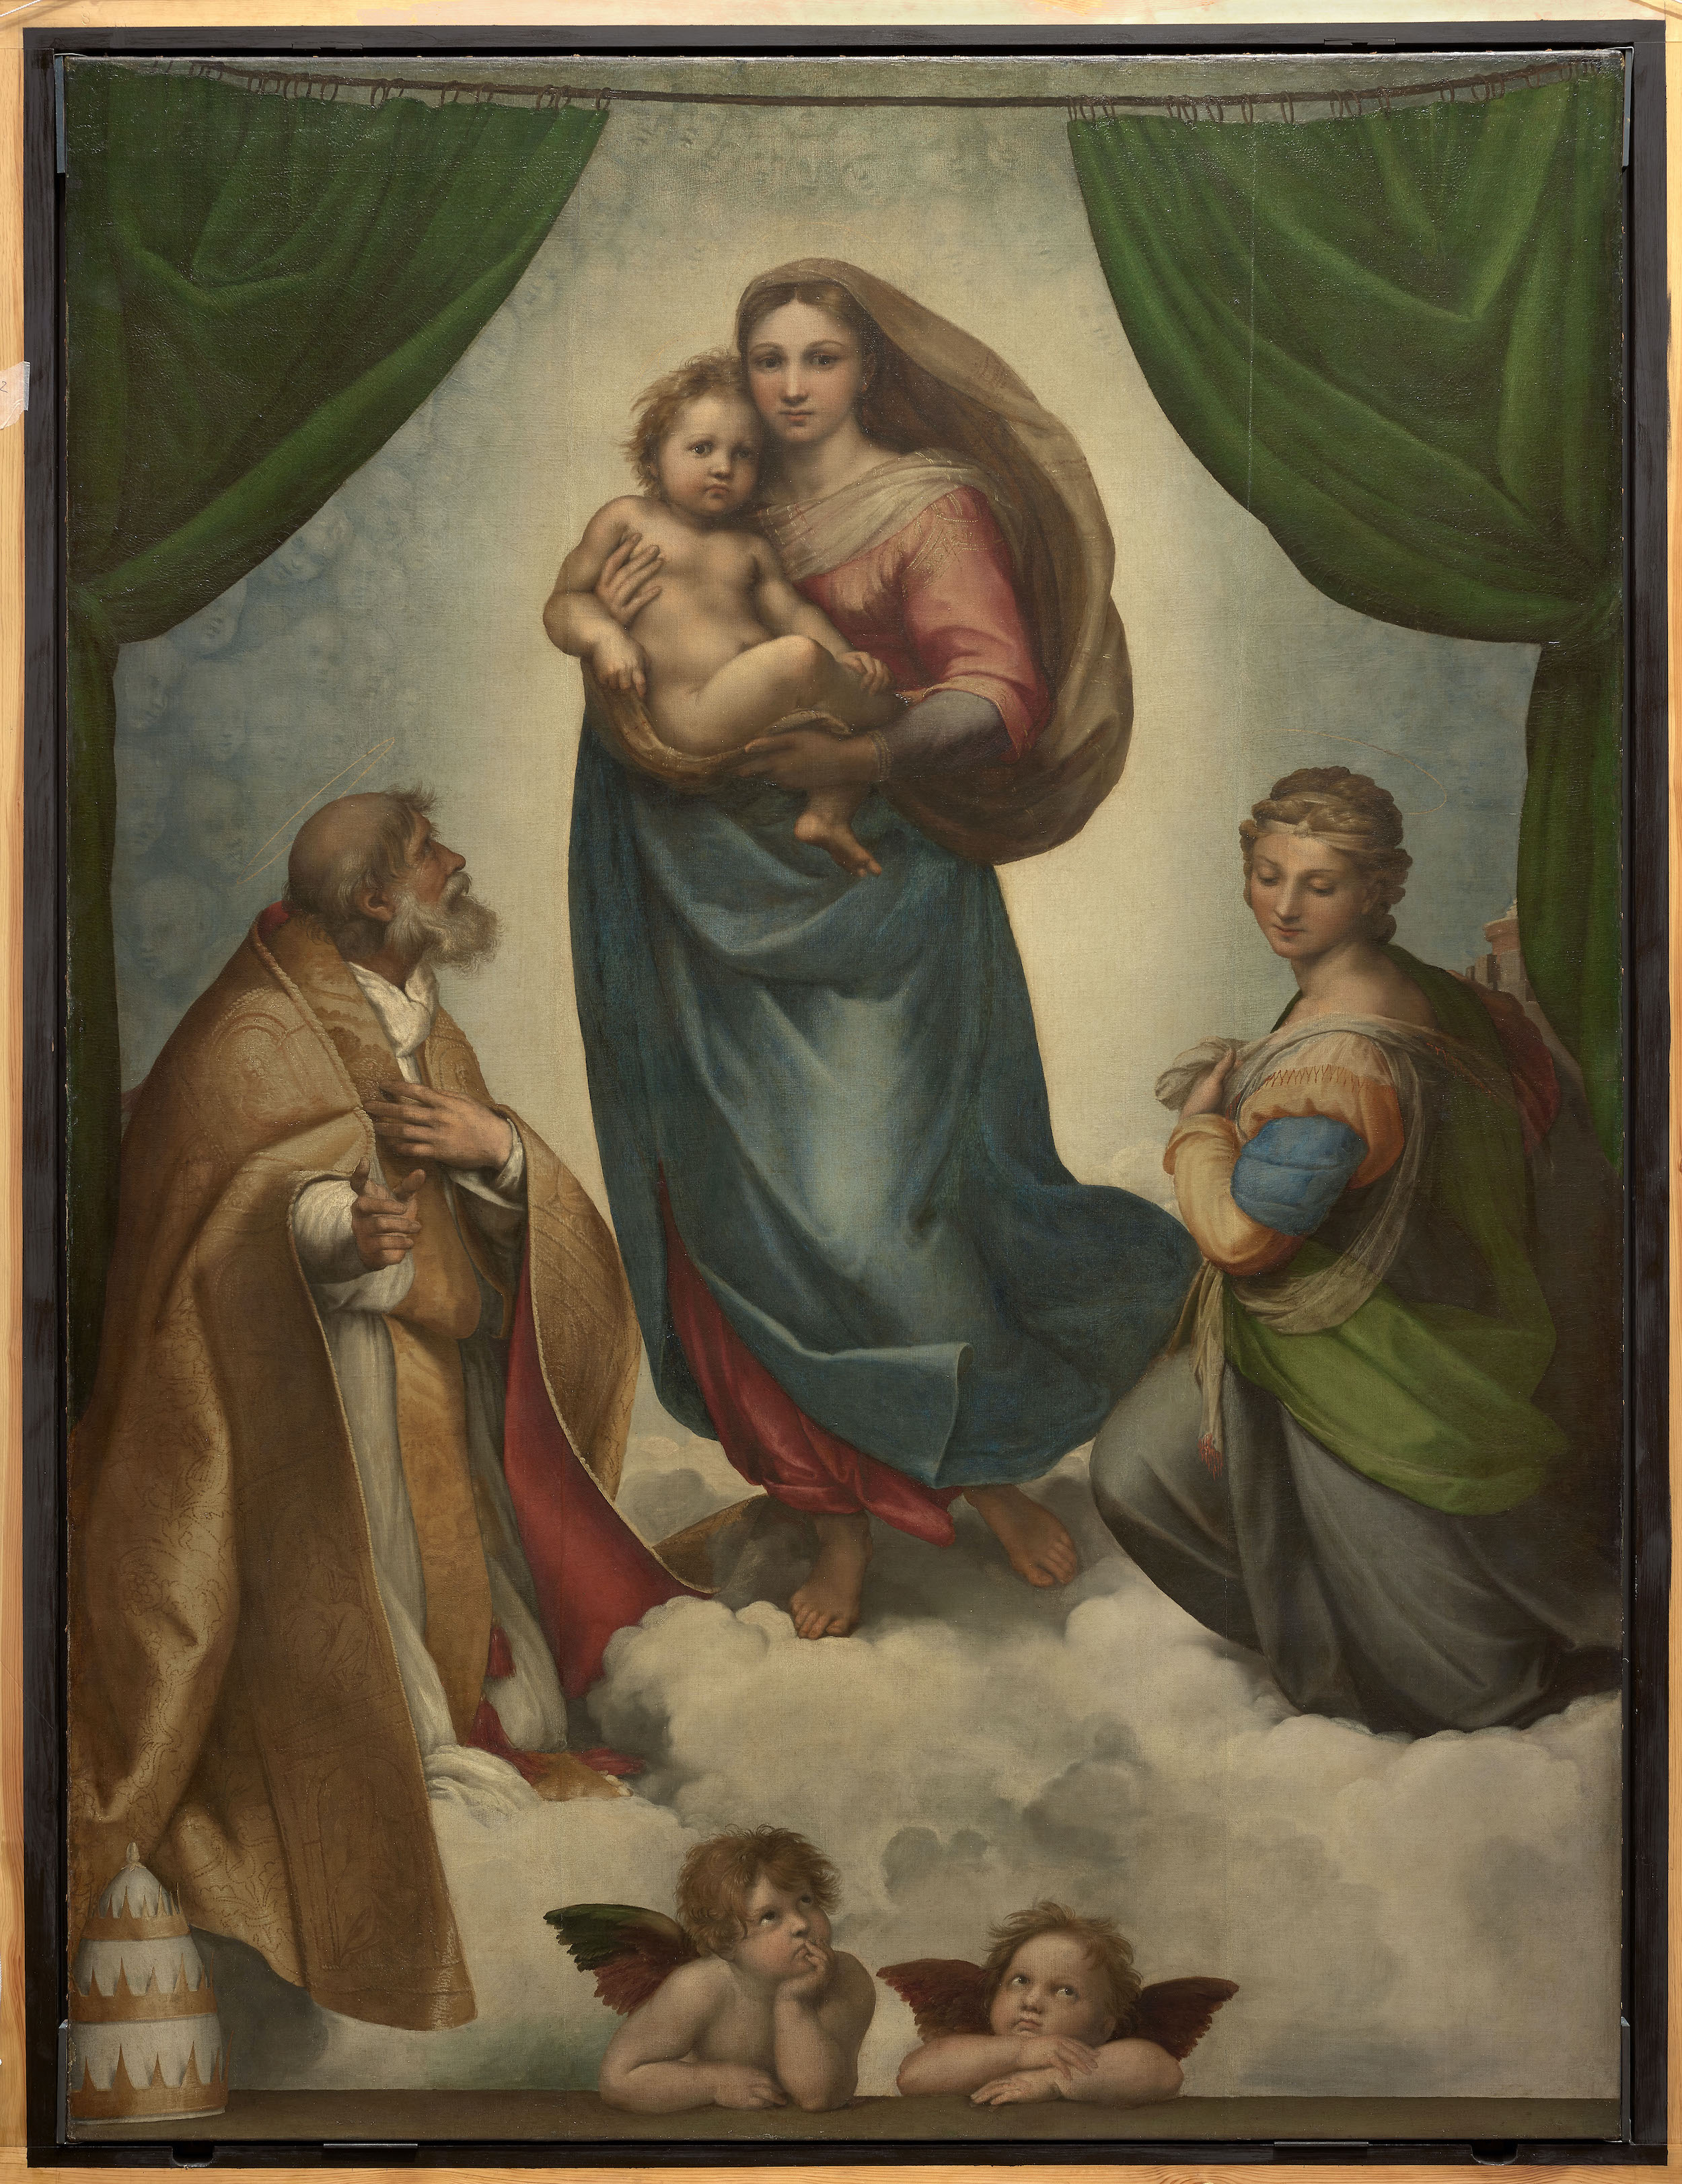 Sistine Madonna by Raphael Santi - 1512-1513 - 201 x 269.5 cm Staatliche Kunstsammlungen Dresden